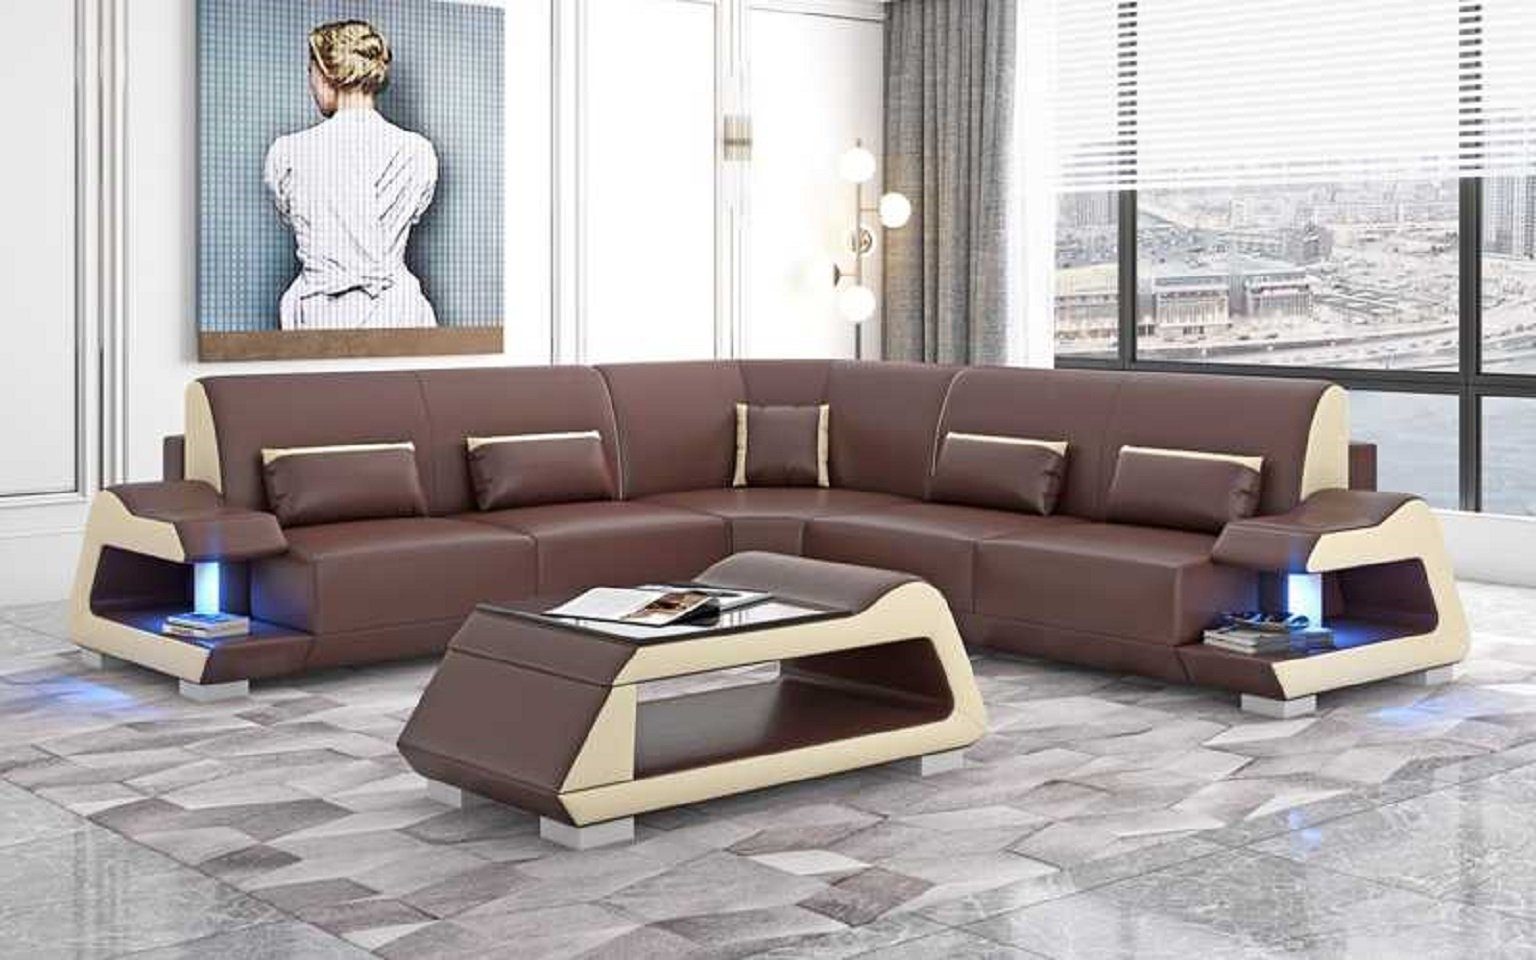 JVmoebel Ecksofa Luxus L Made Teile, Sofa Wohnzimmer Sofas, Europe Eckgarnitur Form Ecksofa Braun 3 in